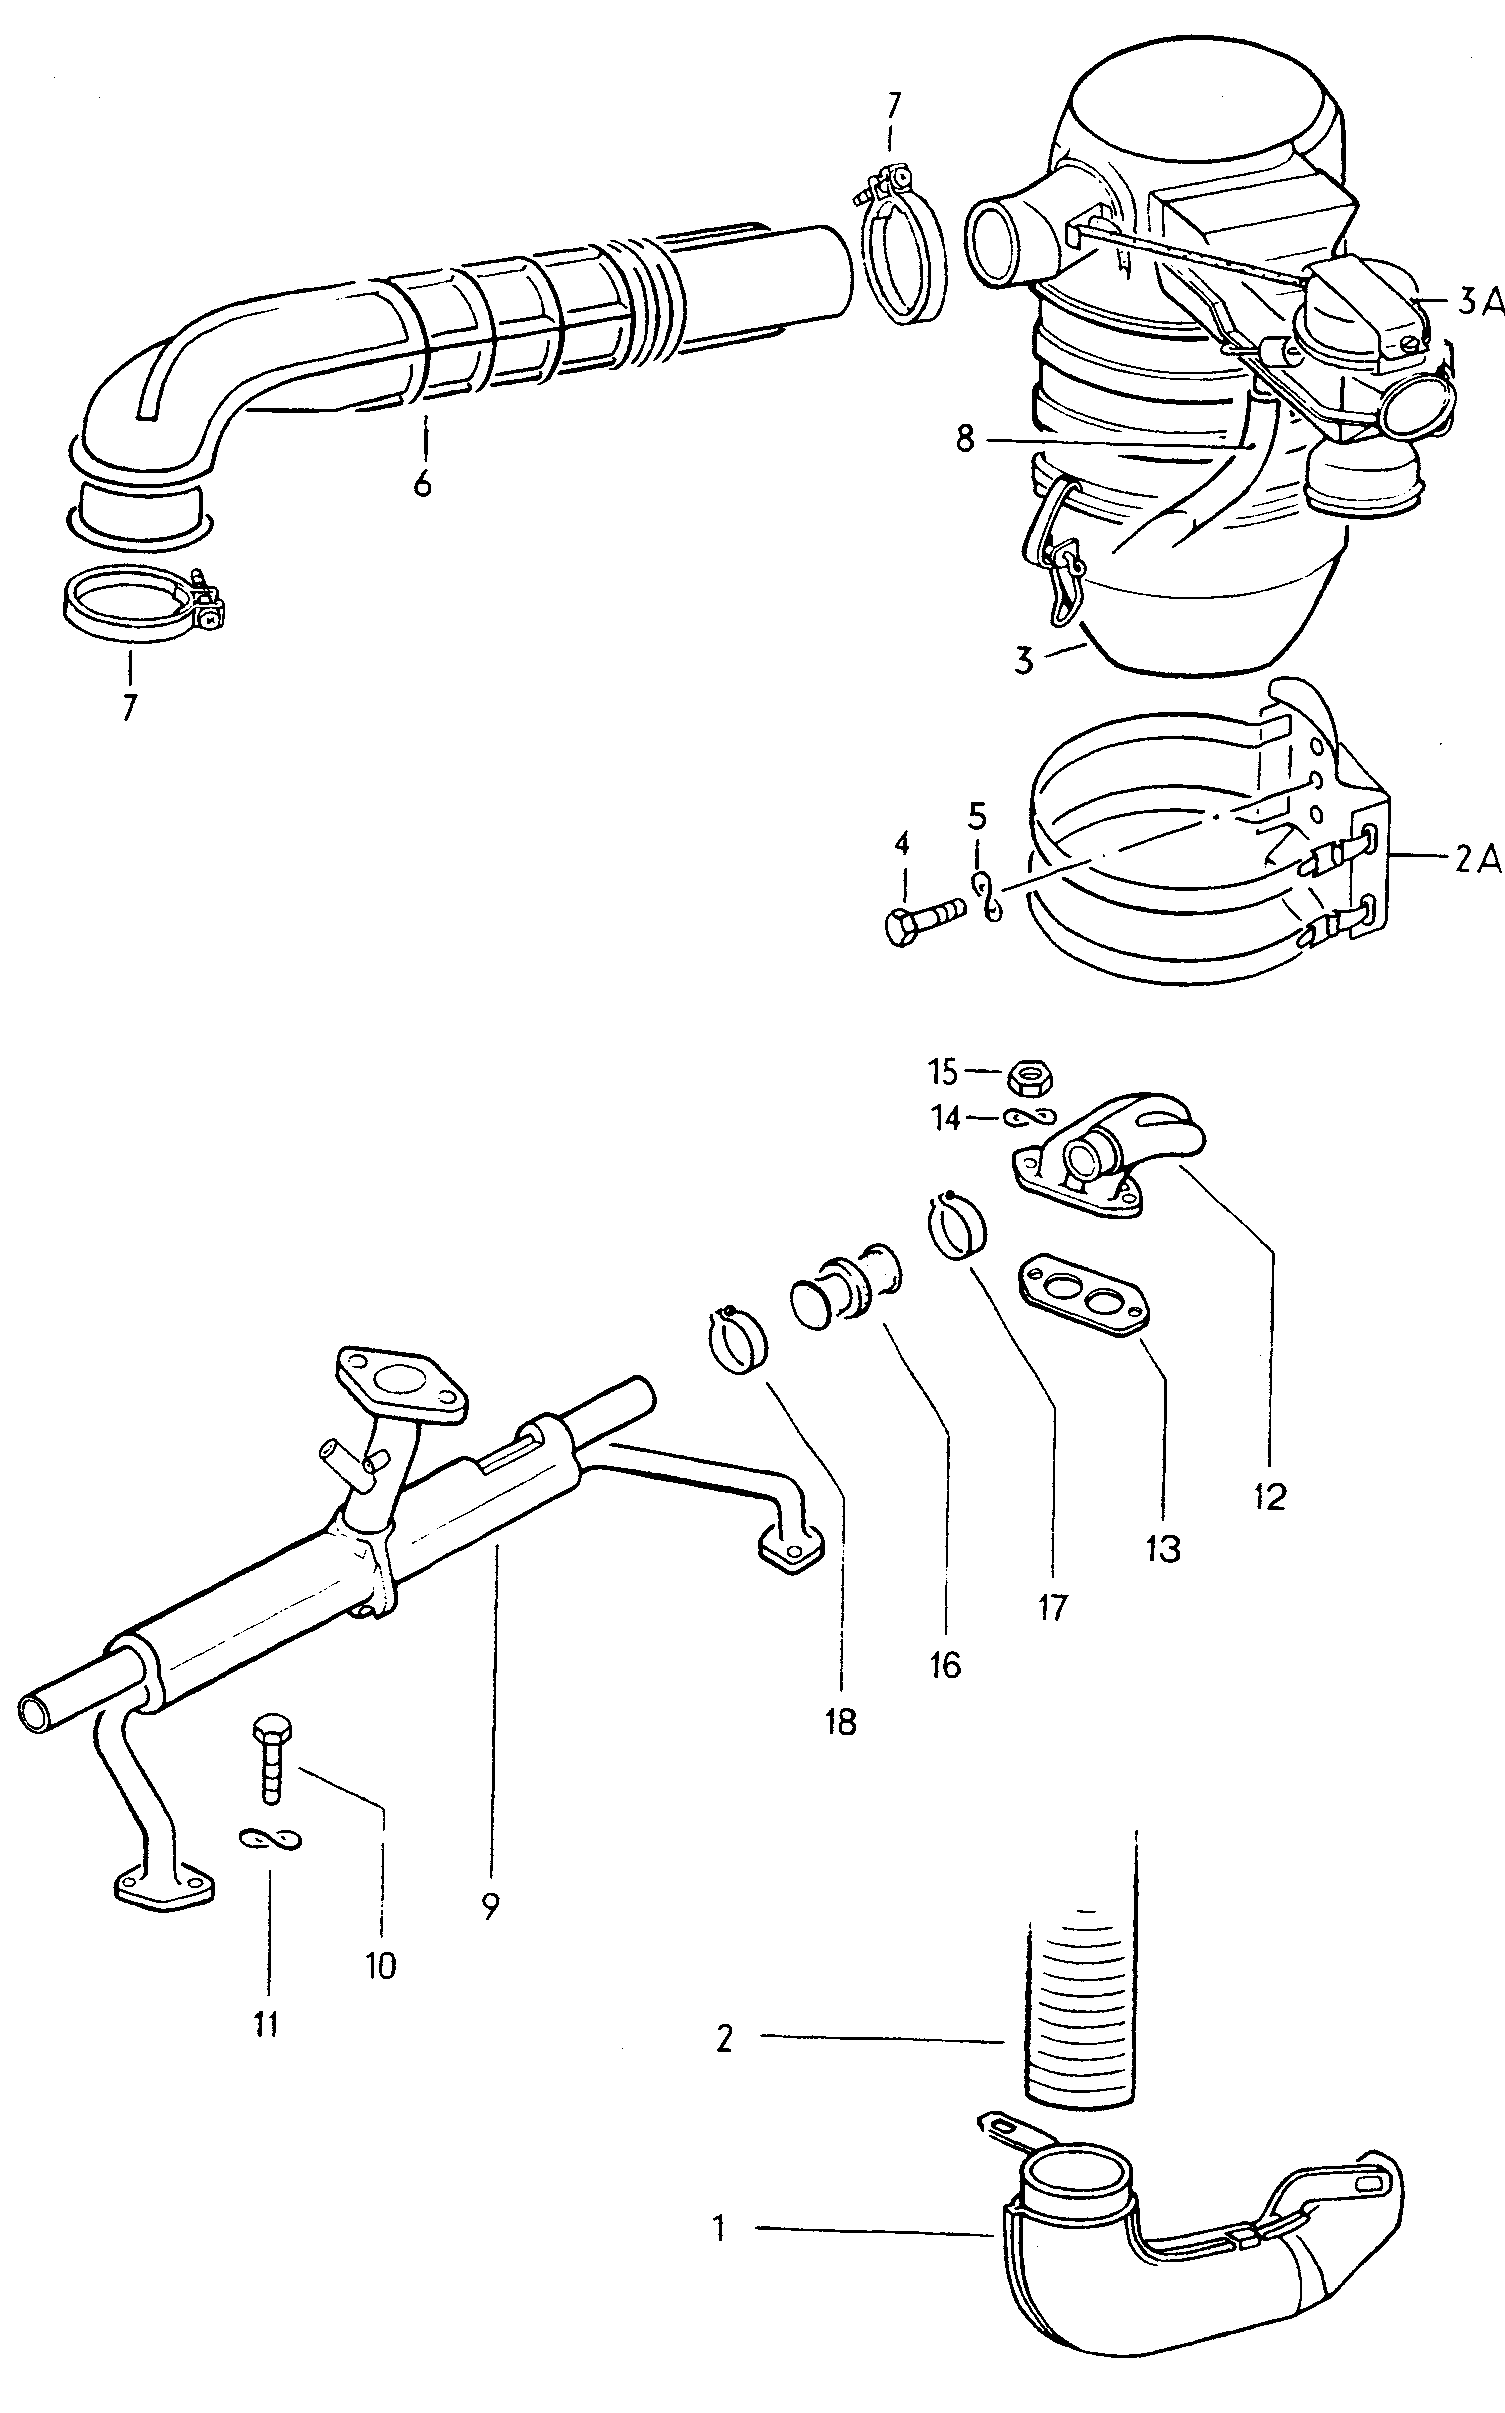 Воздухозаборная труба; Воздушный фильтр - Mod.181 / Iltis(ILT)  